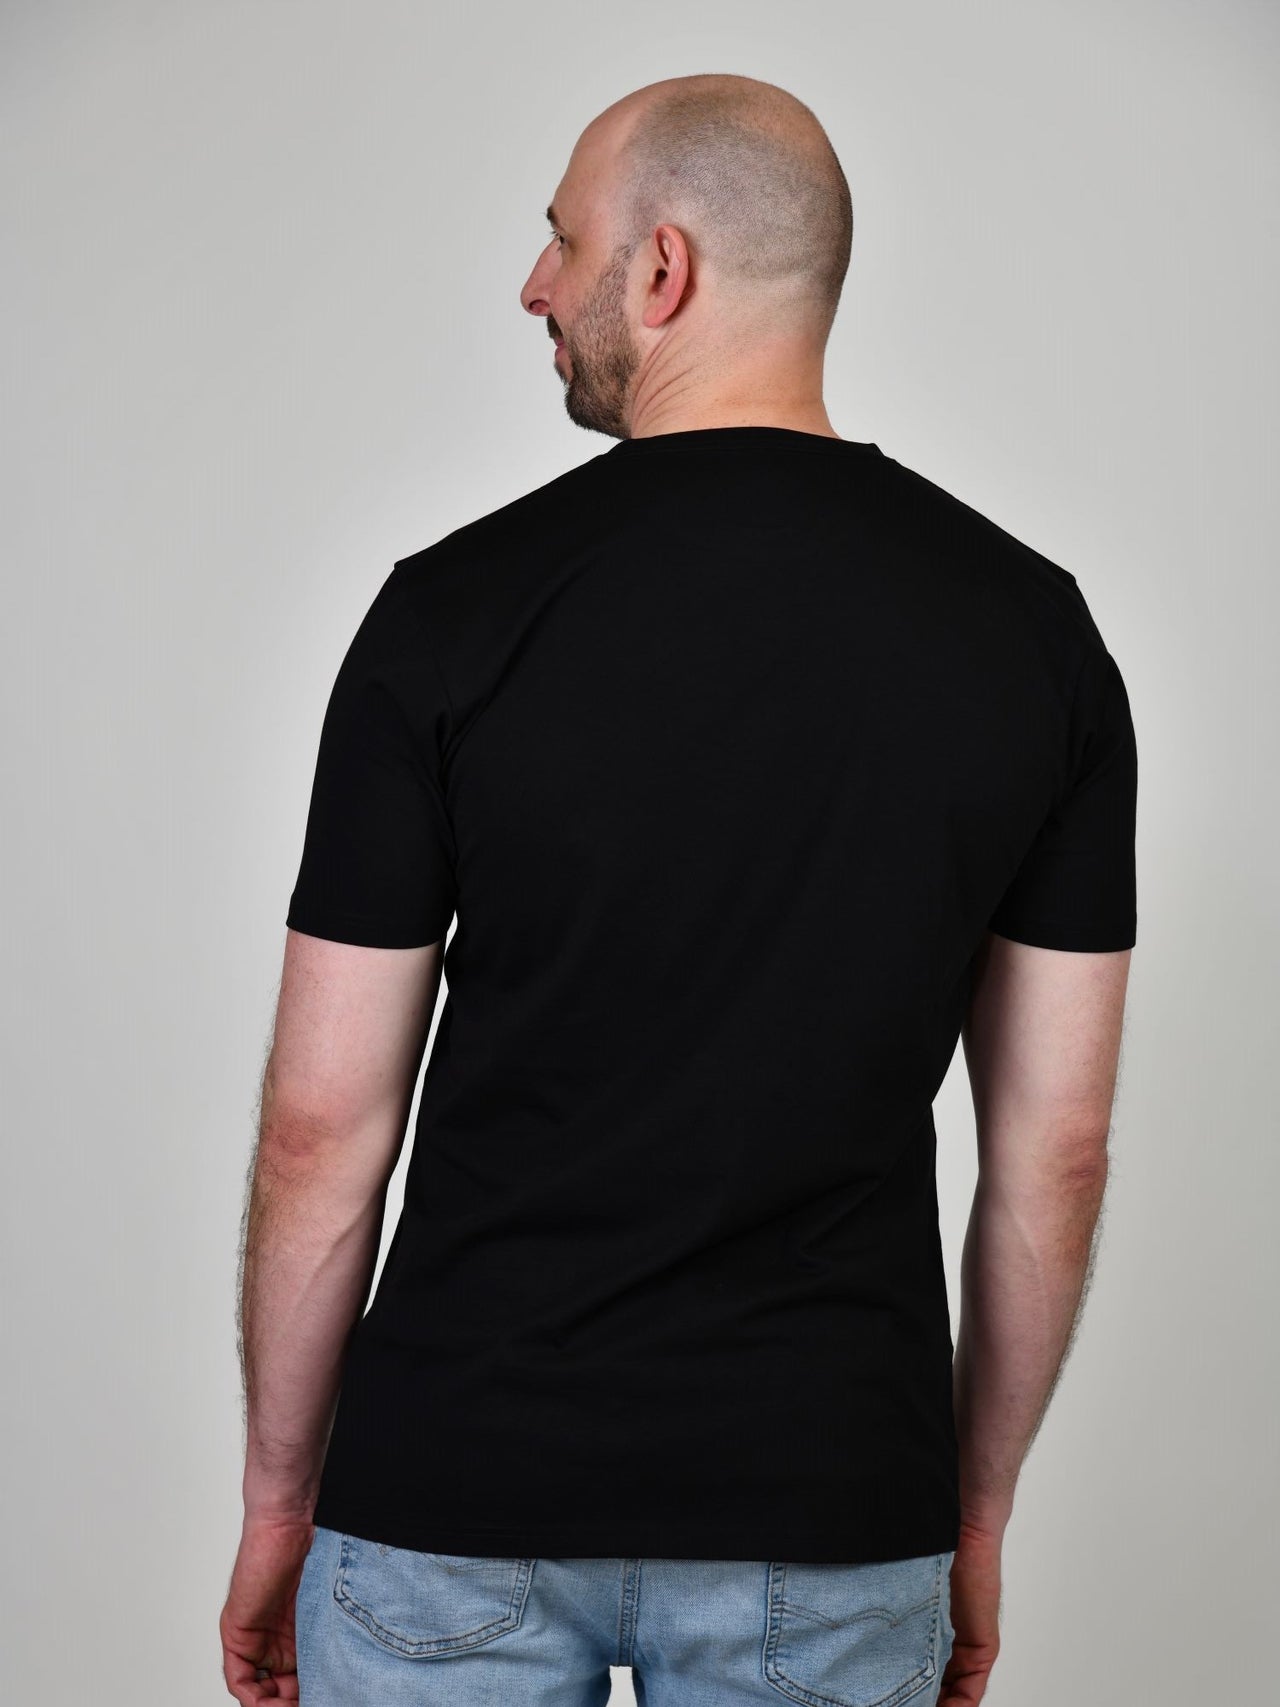 Organic Tall Slim T-shirt | 100% Soft Cotton | Just Tall